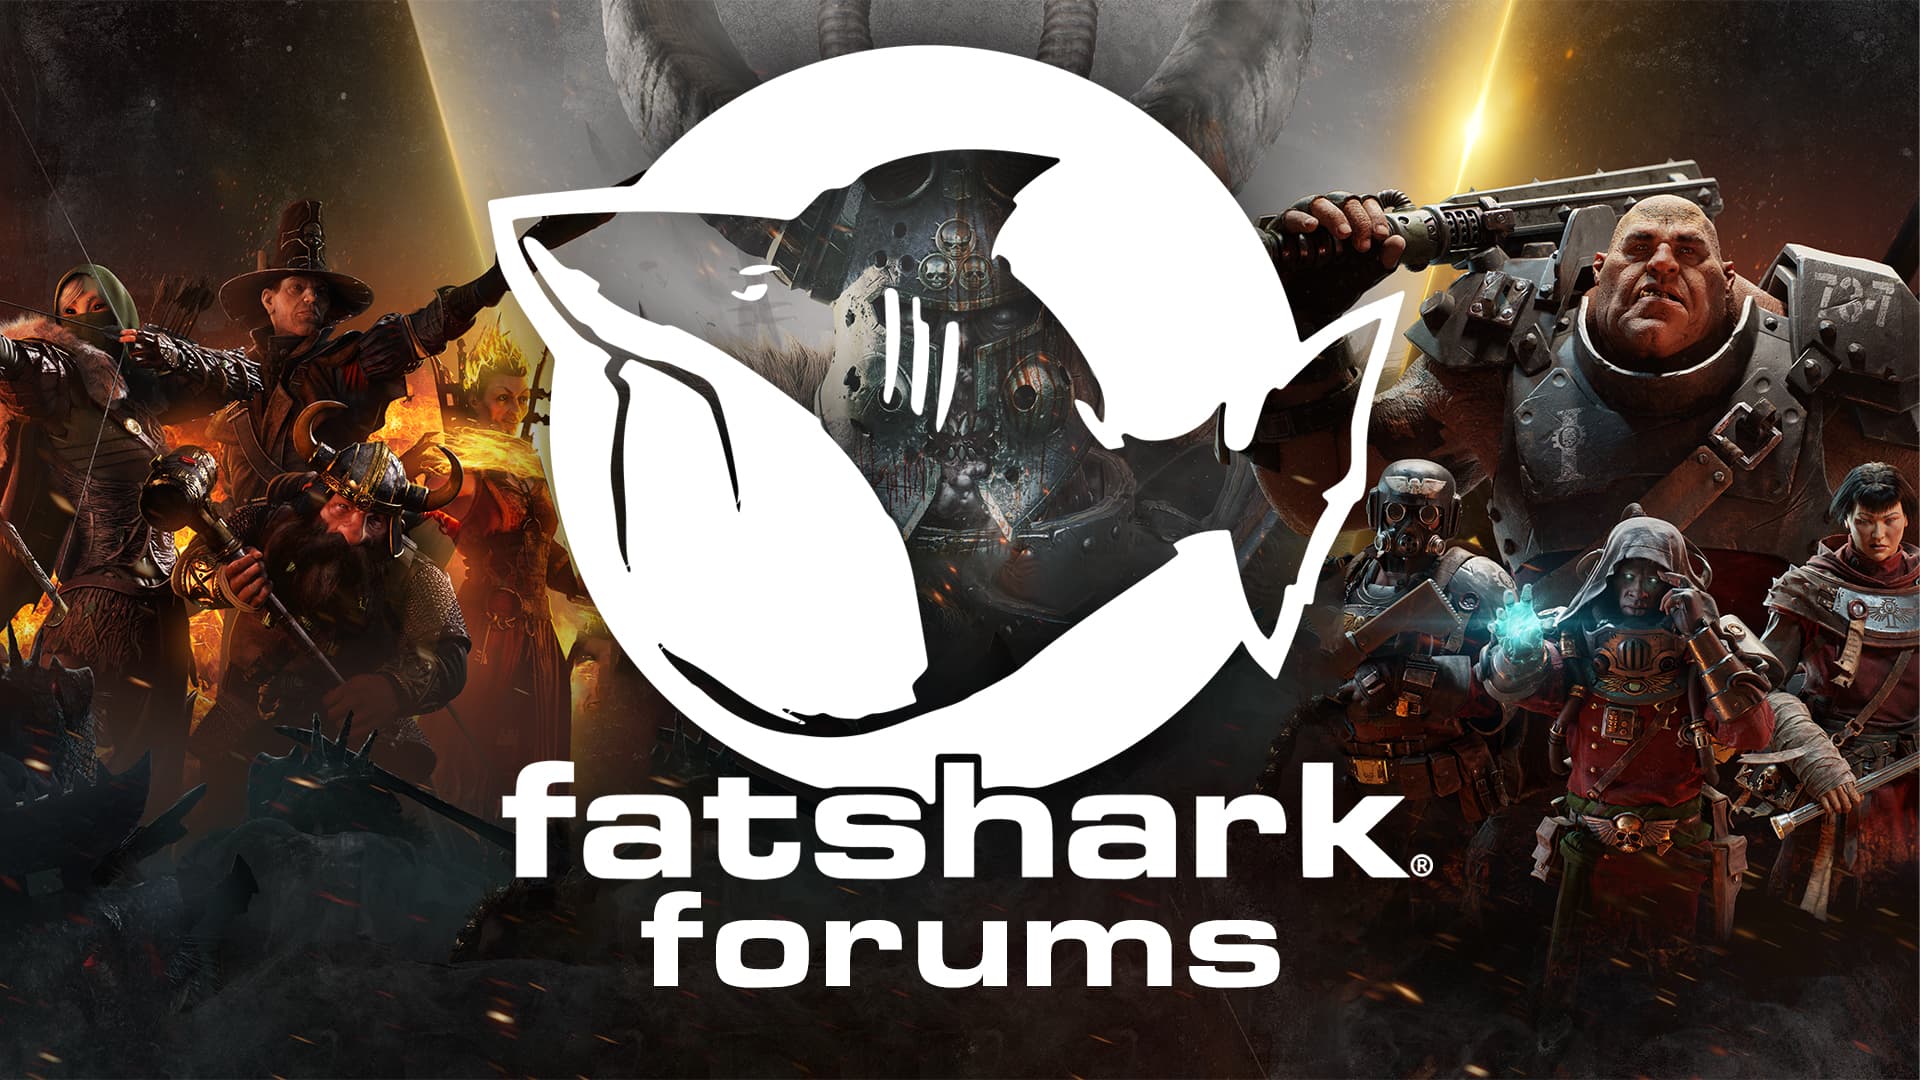 forums.fatsharkgames.com